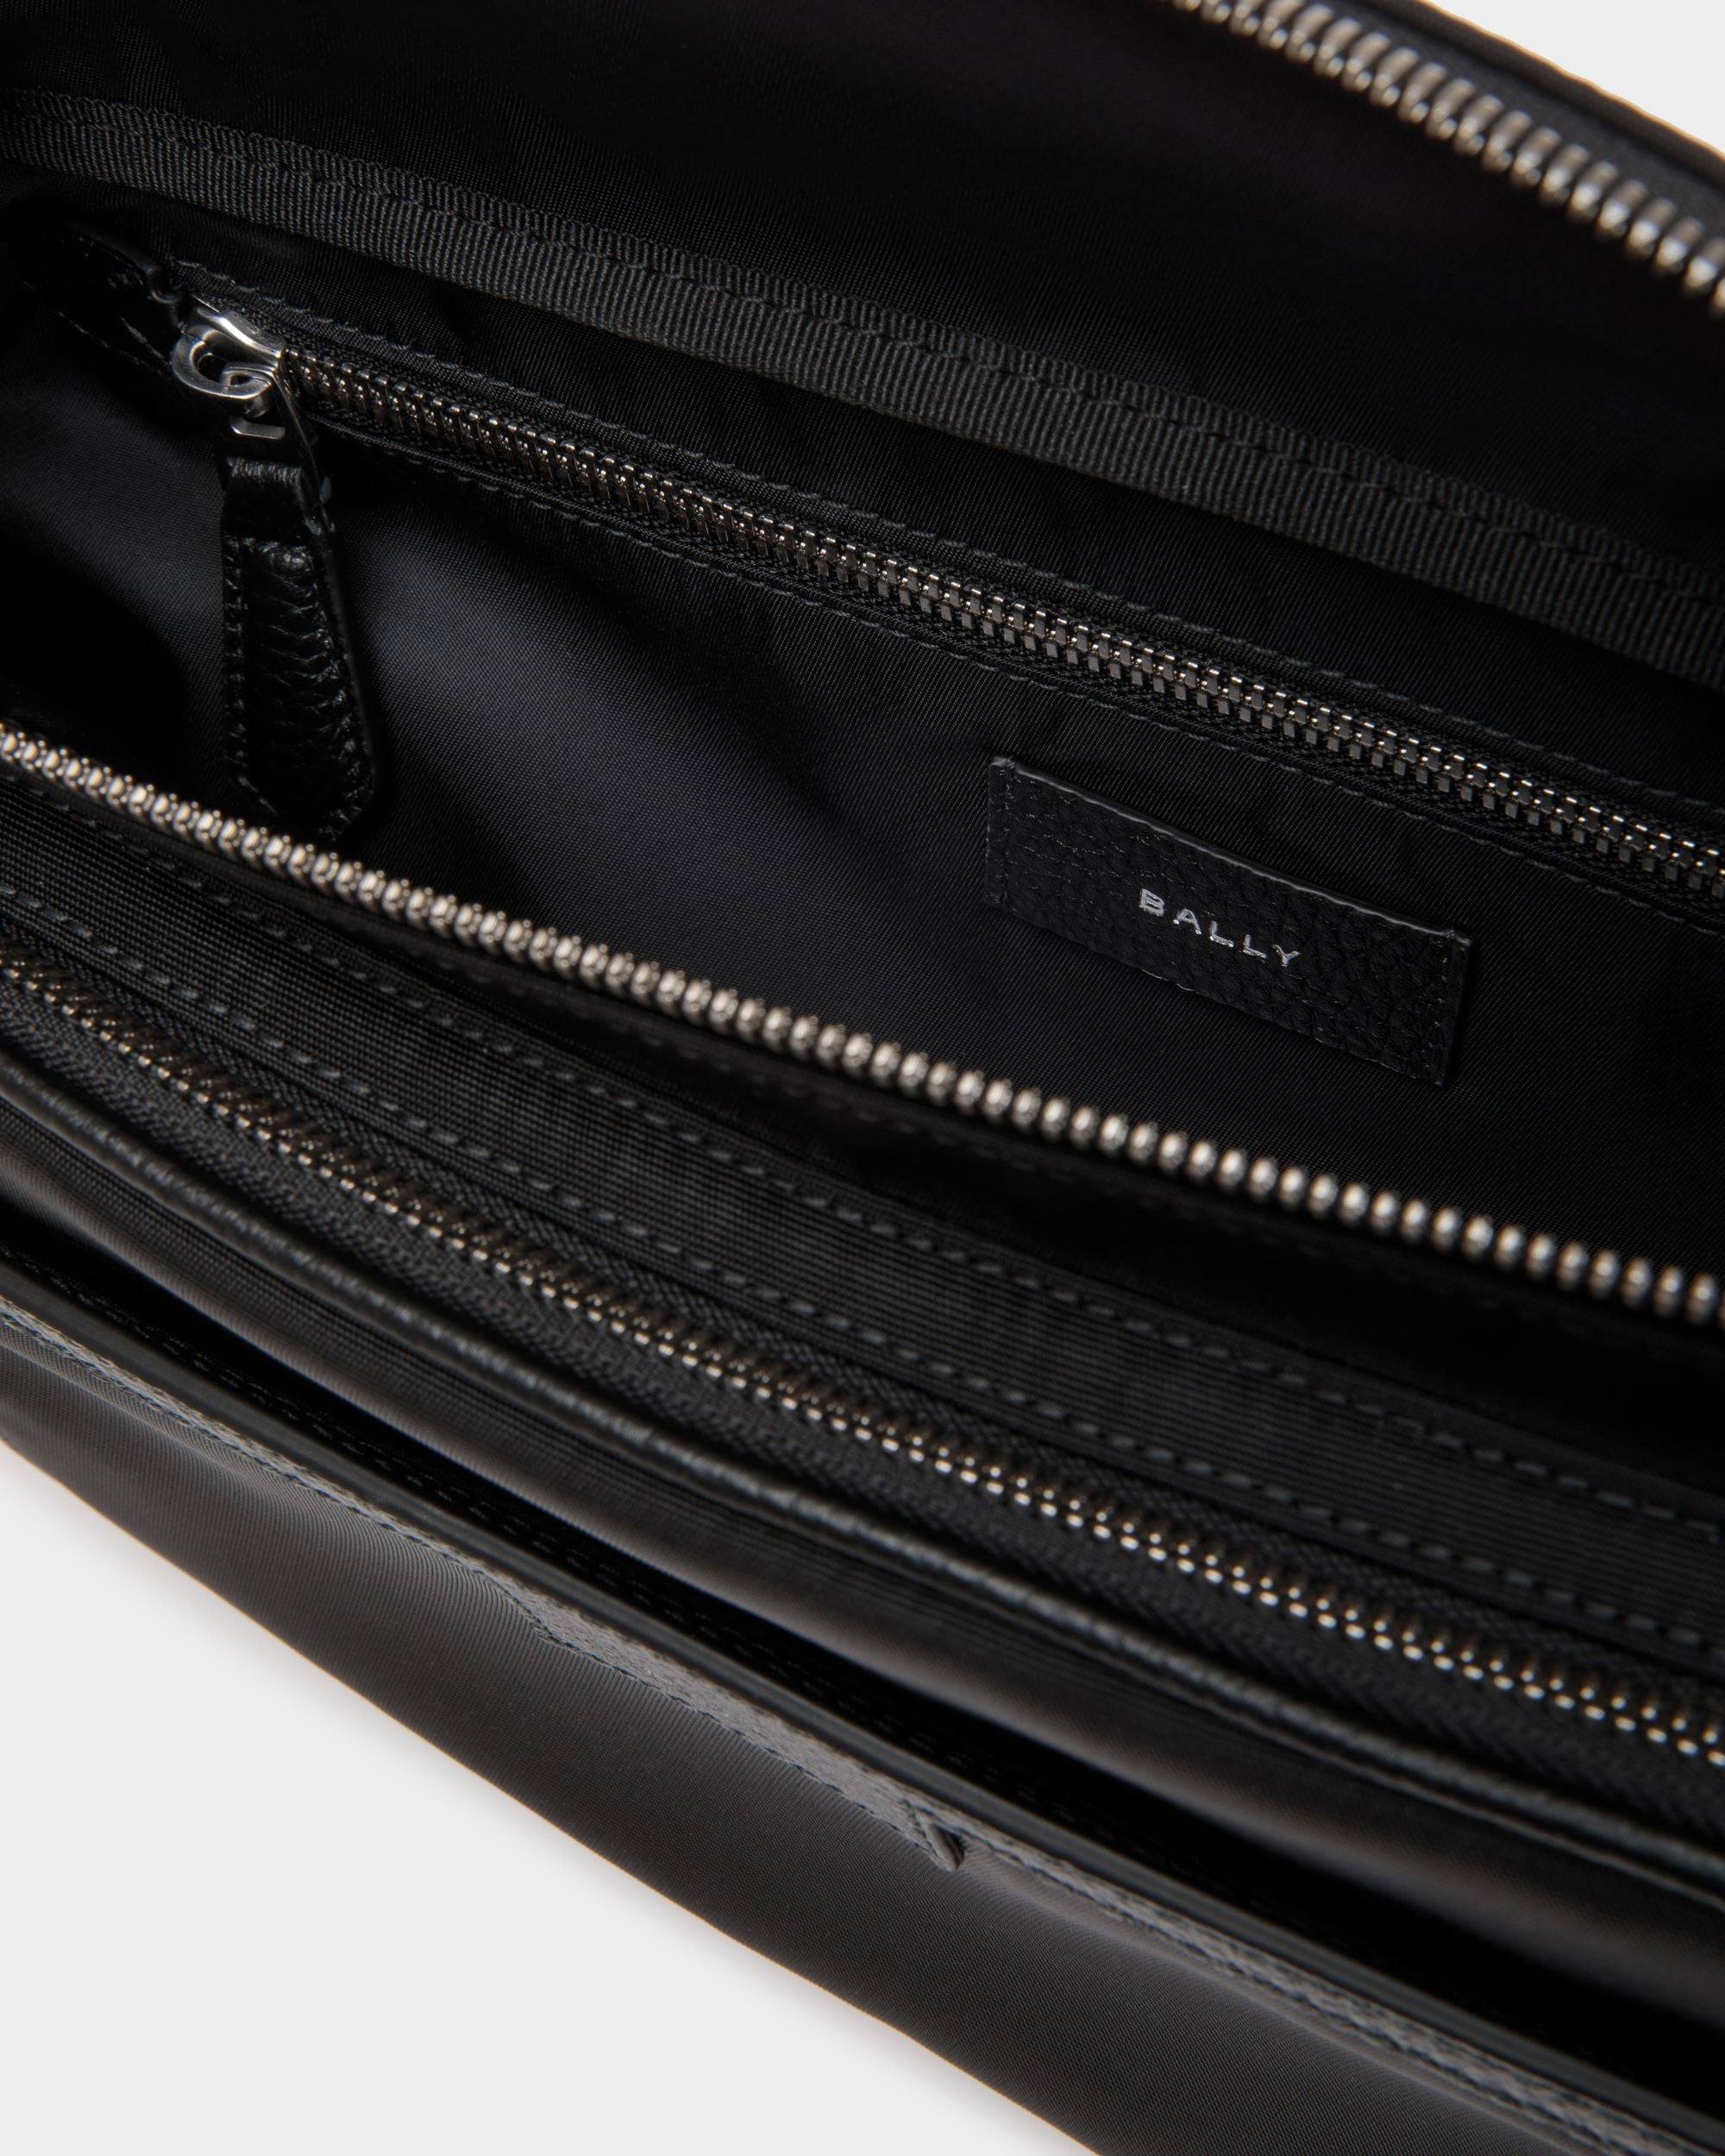 Code | Men's Belt Bag in Black Nylon | Bally | Still Life Open / Inside